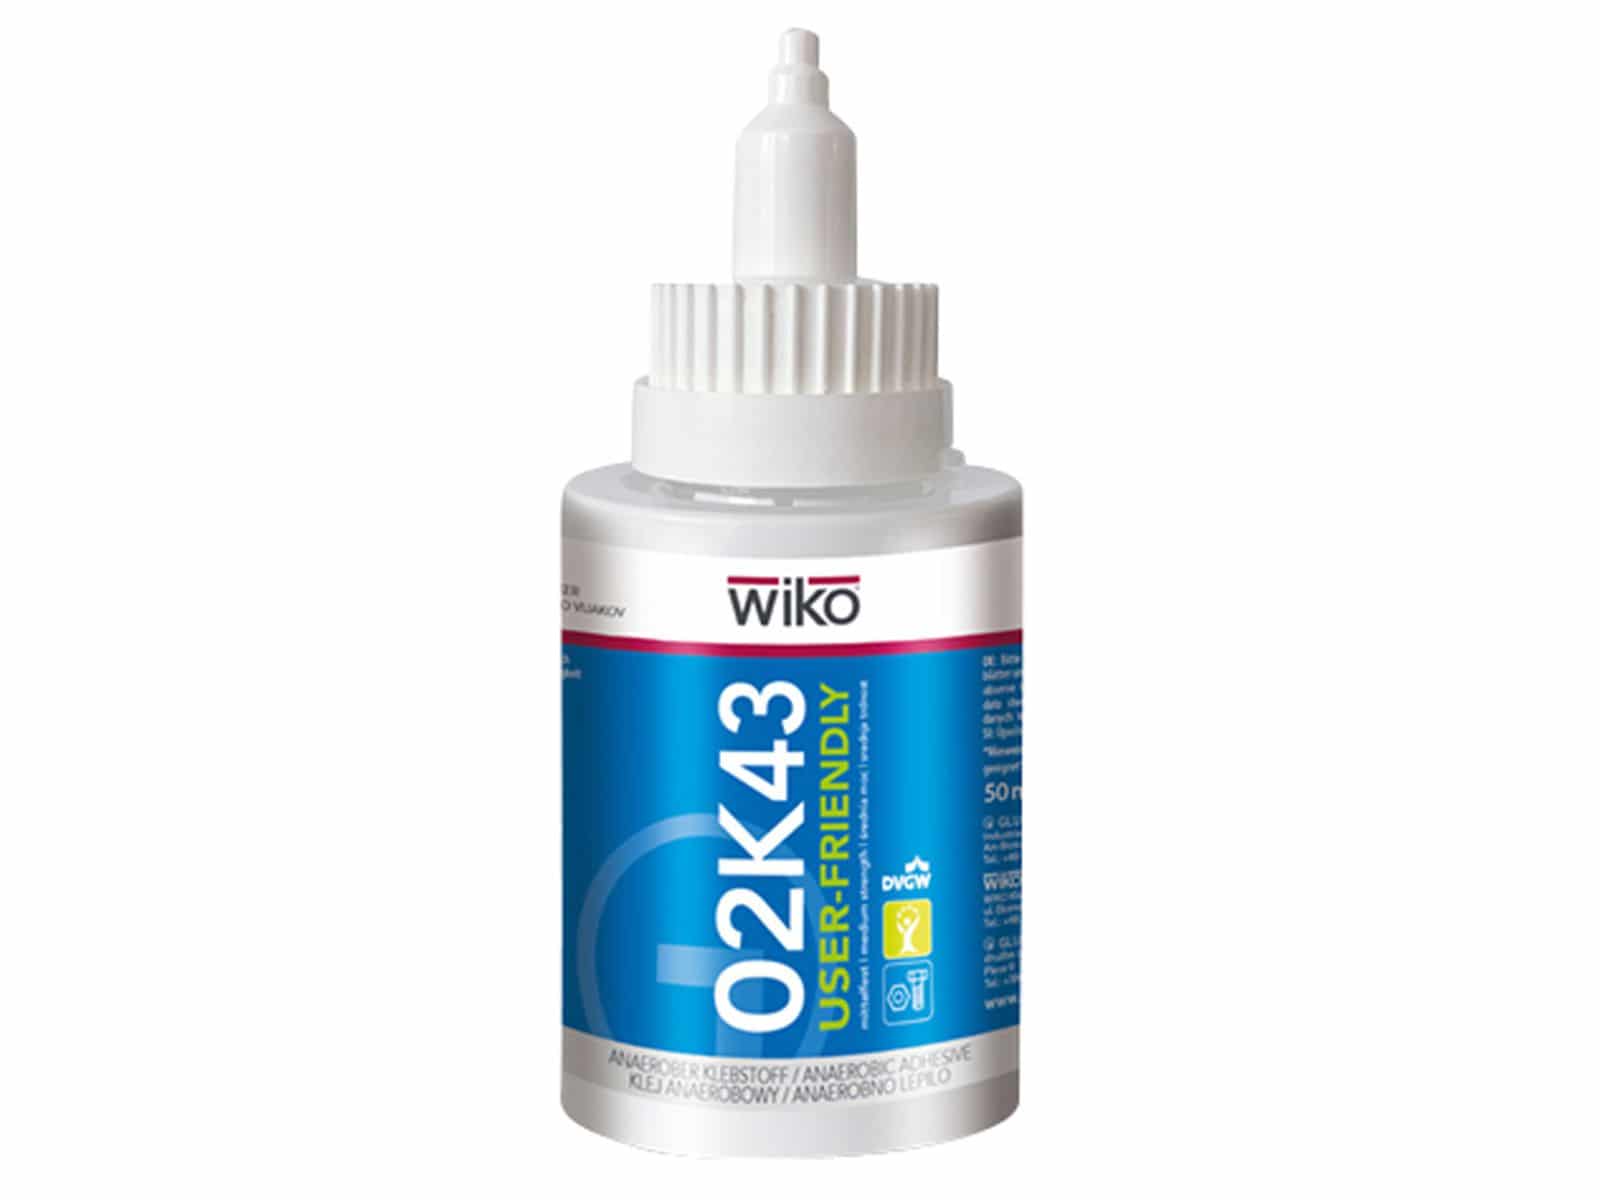 WIKO Schraubensicherung 02K43, 50 ml, Ziehharmonika Flasche von Wiko